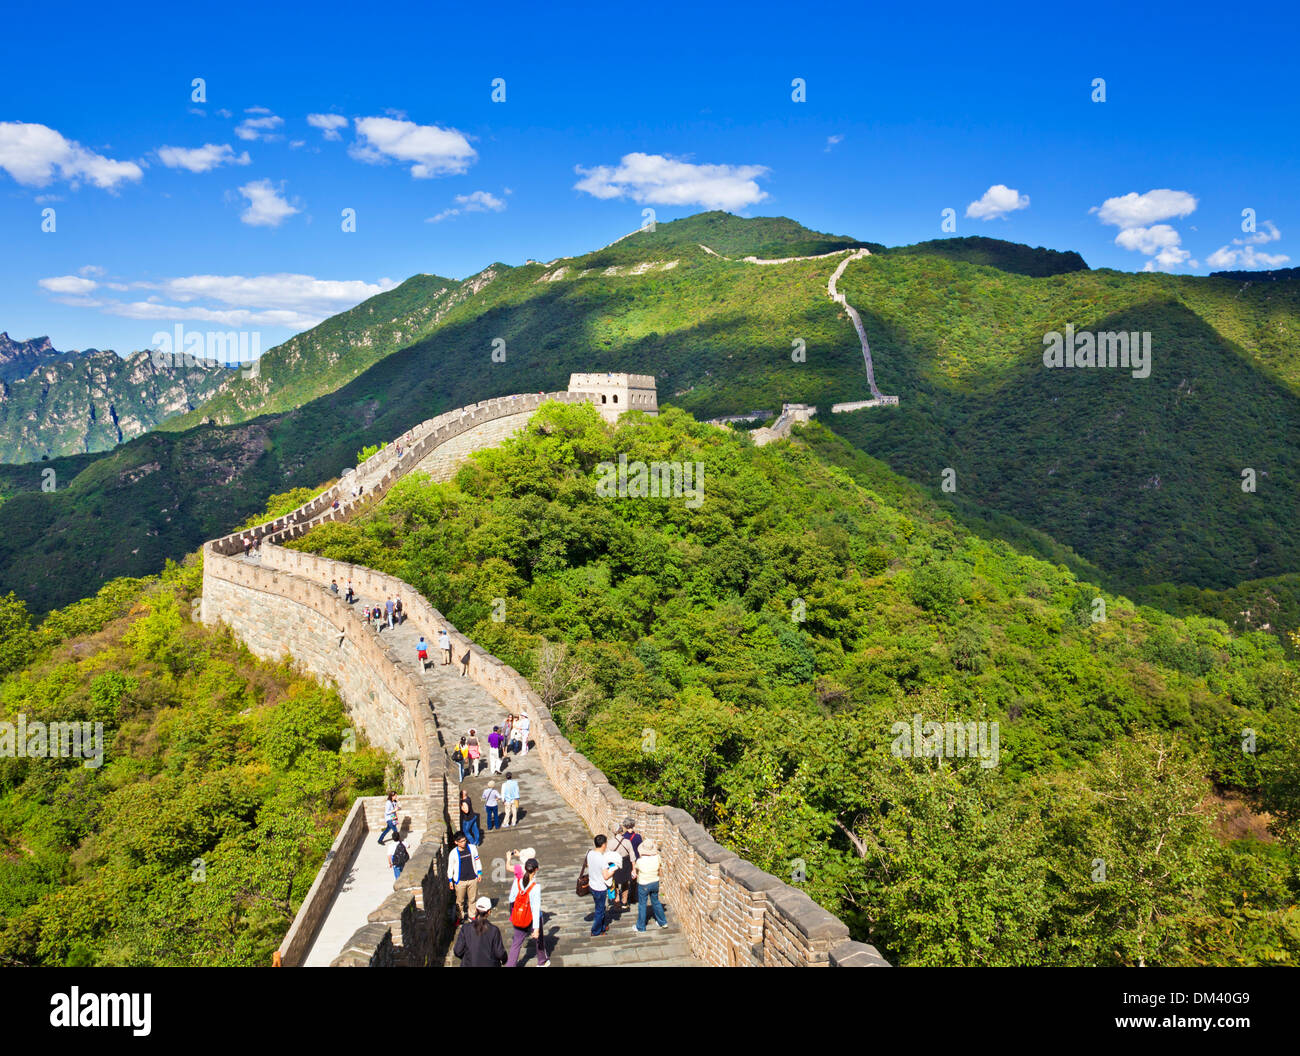 Los turistas que visitan la Gran Muralla de China, Sitio del Patrimonio Mundial de la UNESCO, Mutianyu, distrito de Beijing, China, Asia Foto de stock